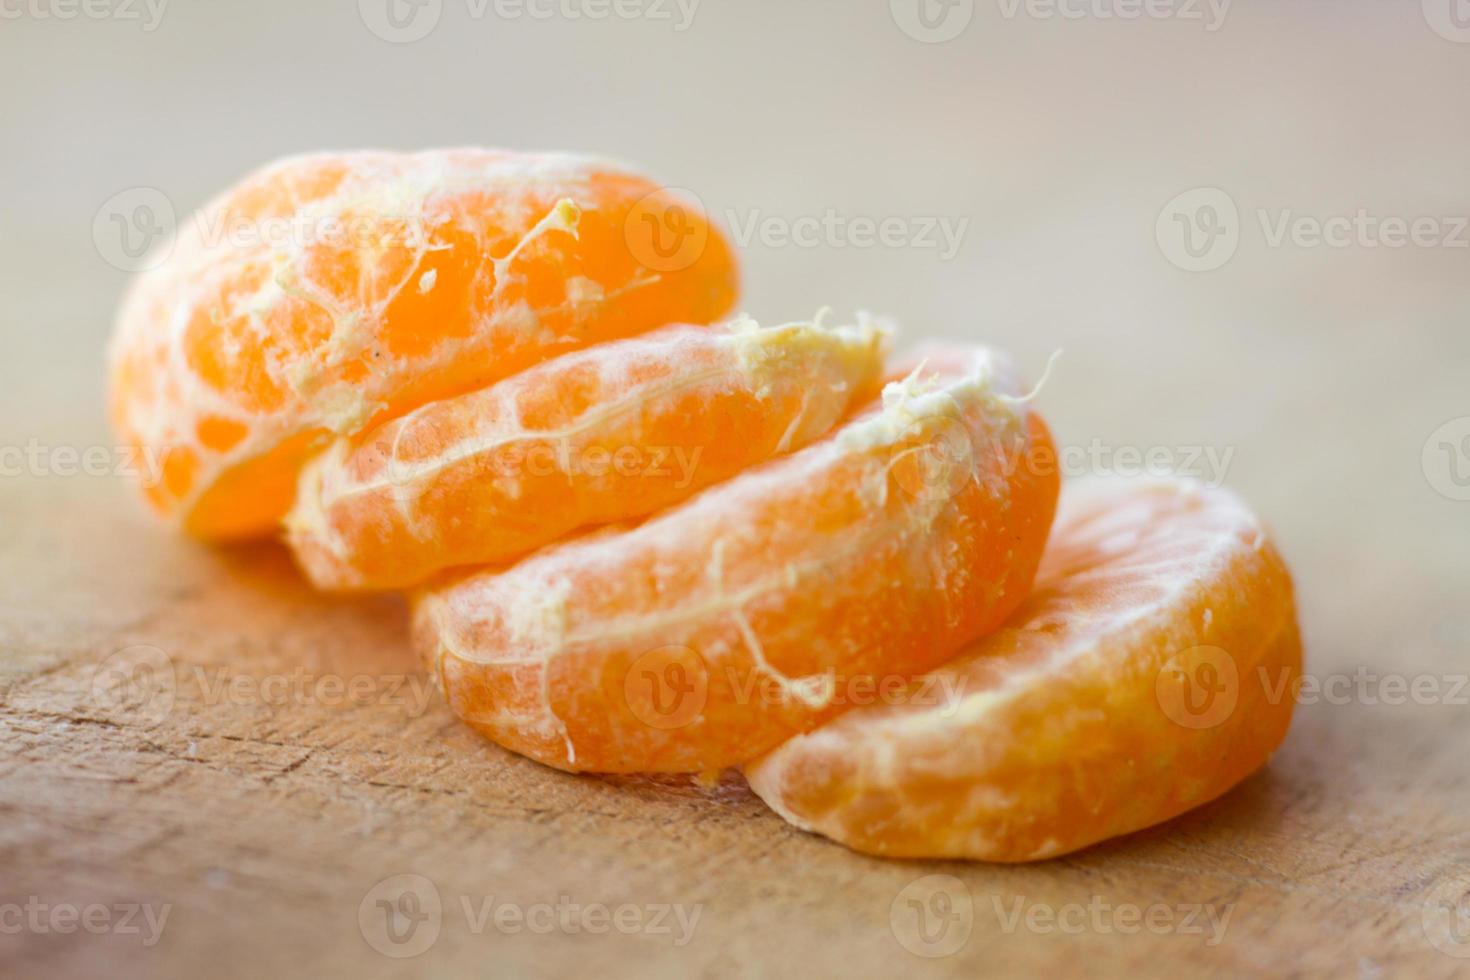 Tangerine photo